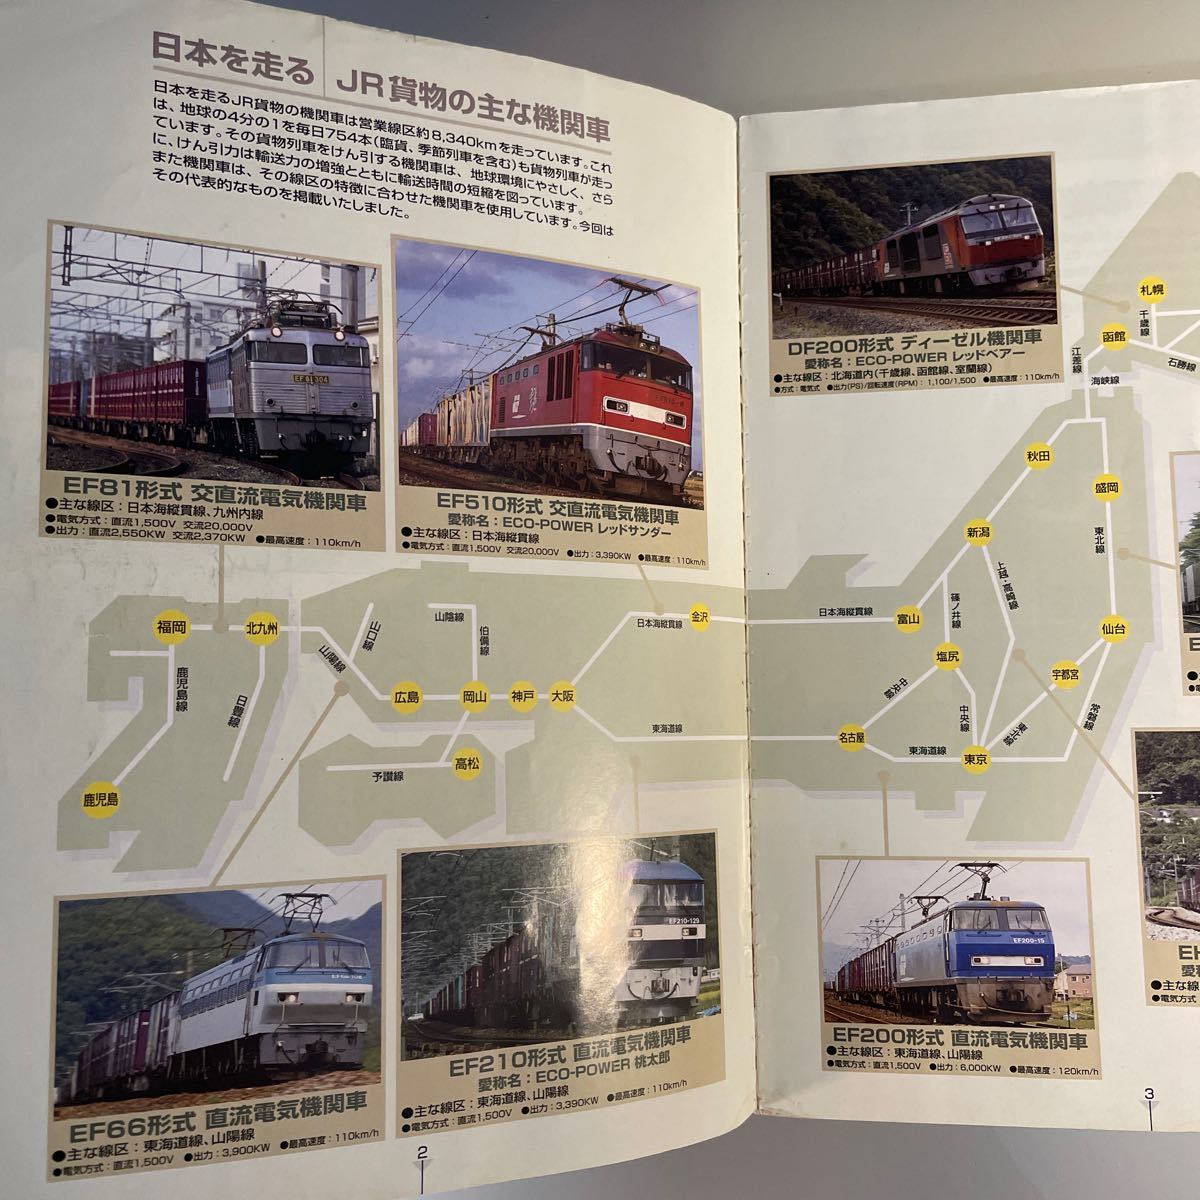 JR貨物時刻表 2010 創刊30周年記念号　鉄道貨物協会　物流 エコロジカル ロジスティック